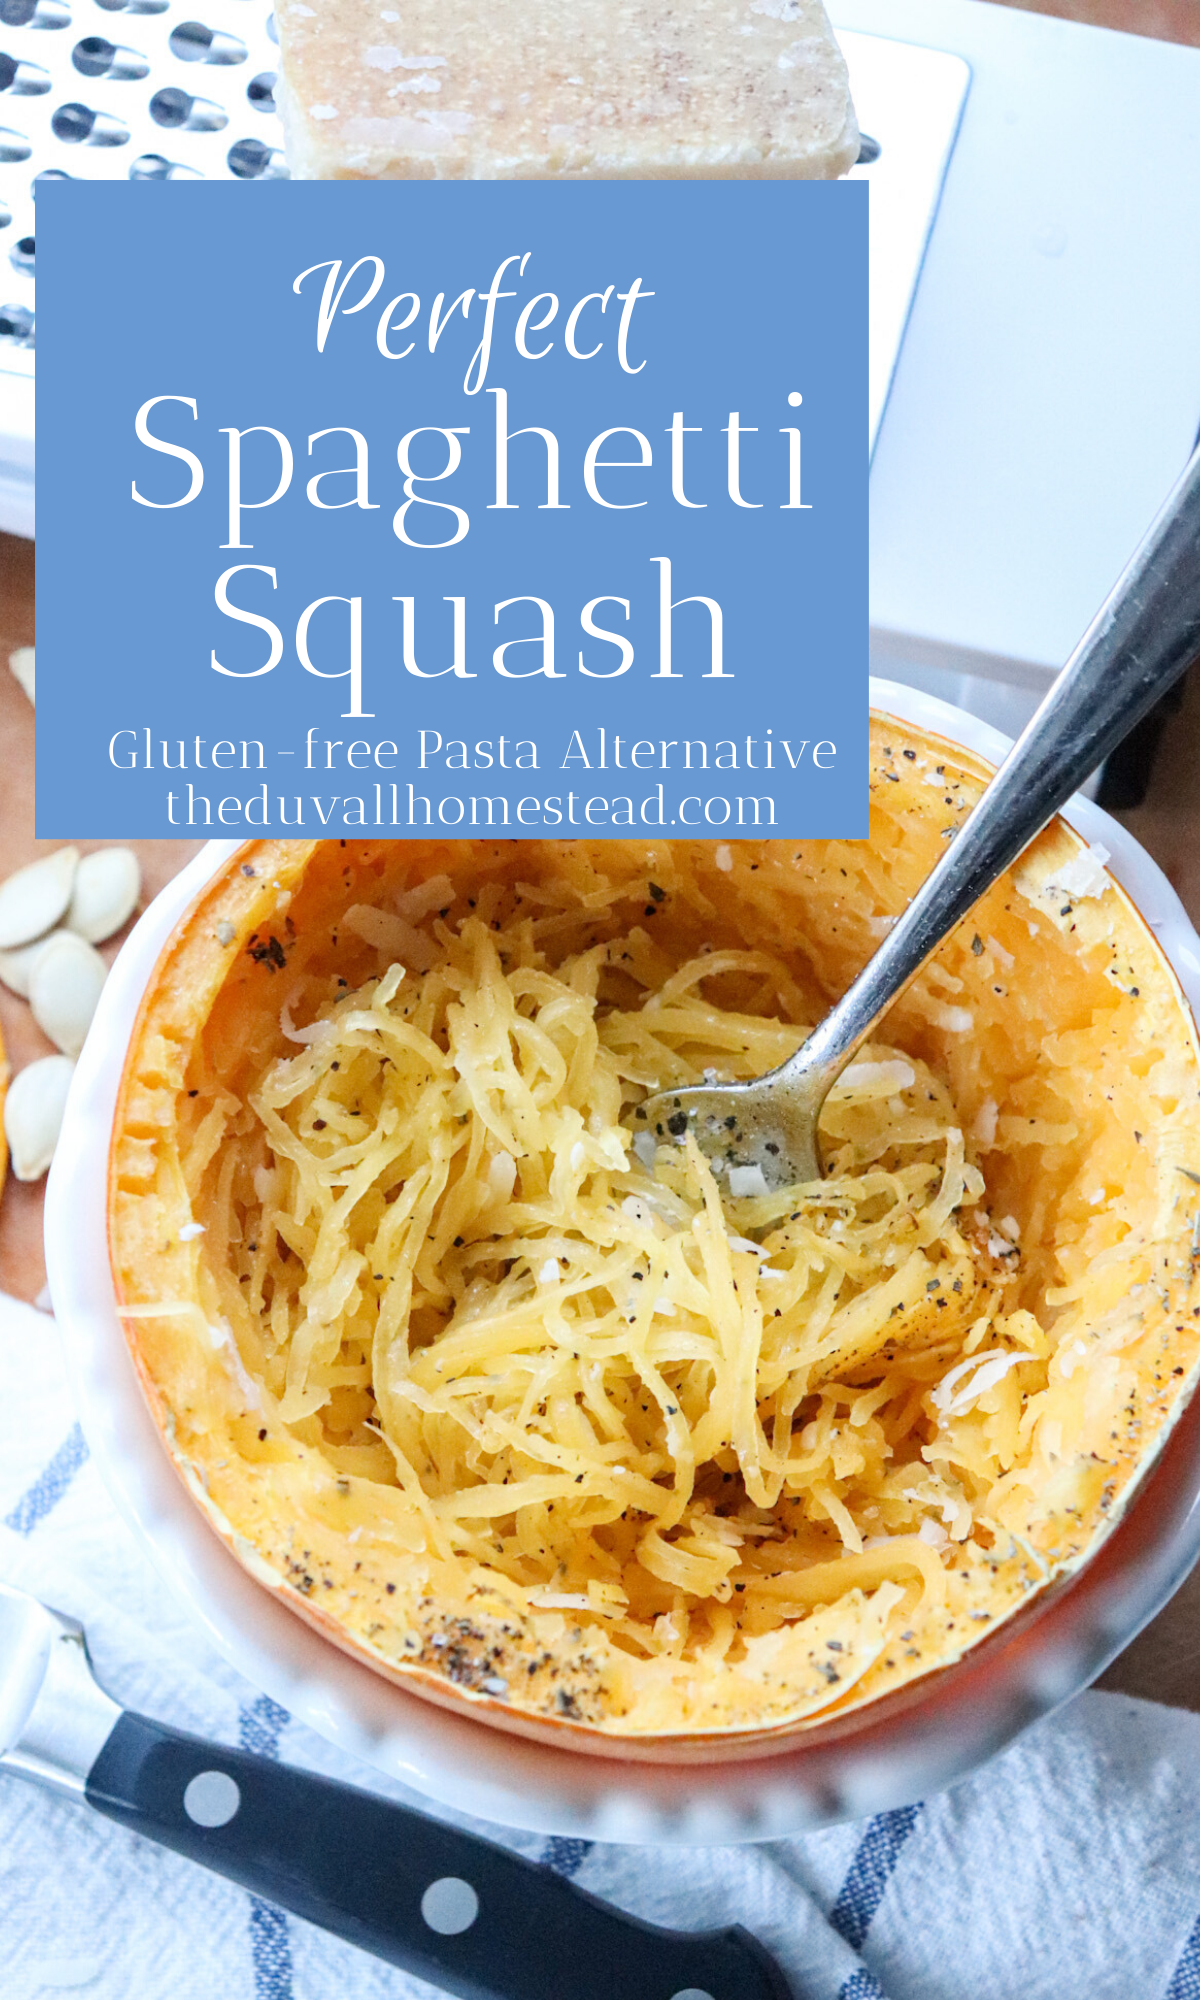 Learn how to Make Farm Fresh Spaghetti Squash - The Duvall Homestead